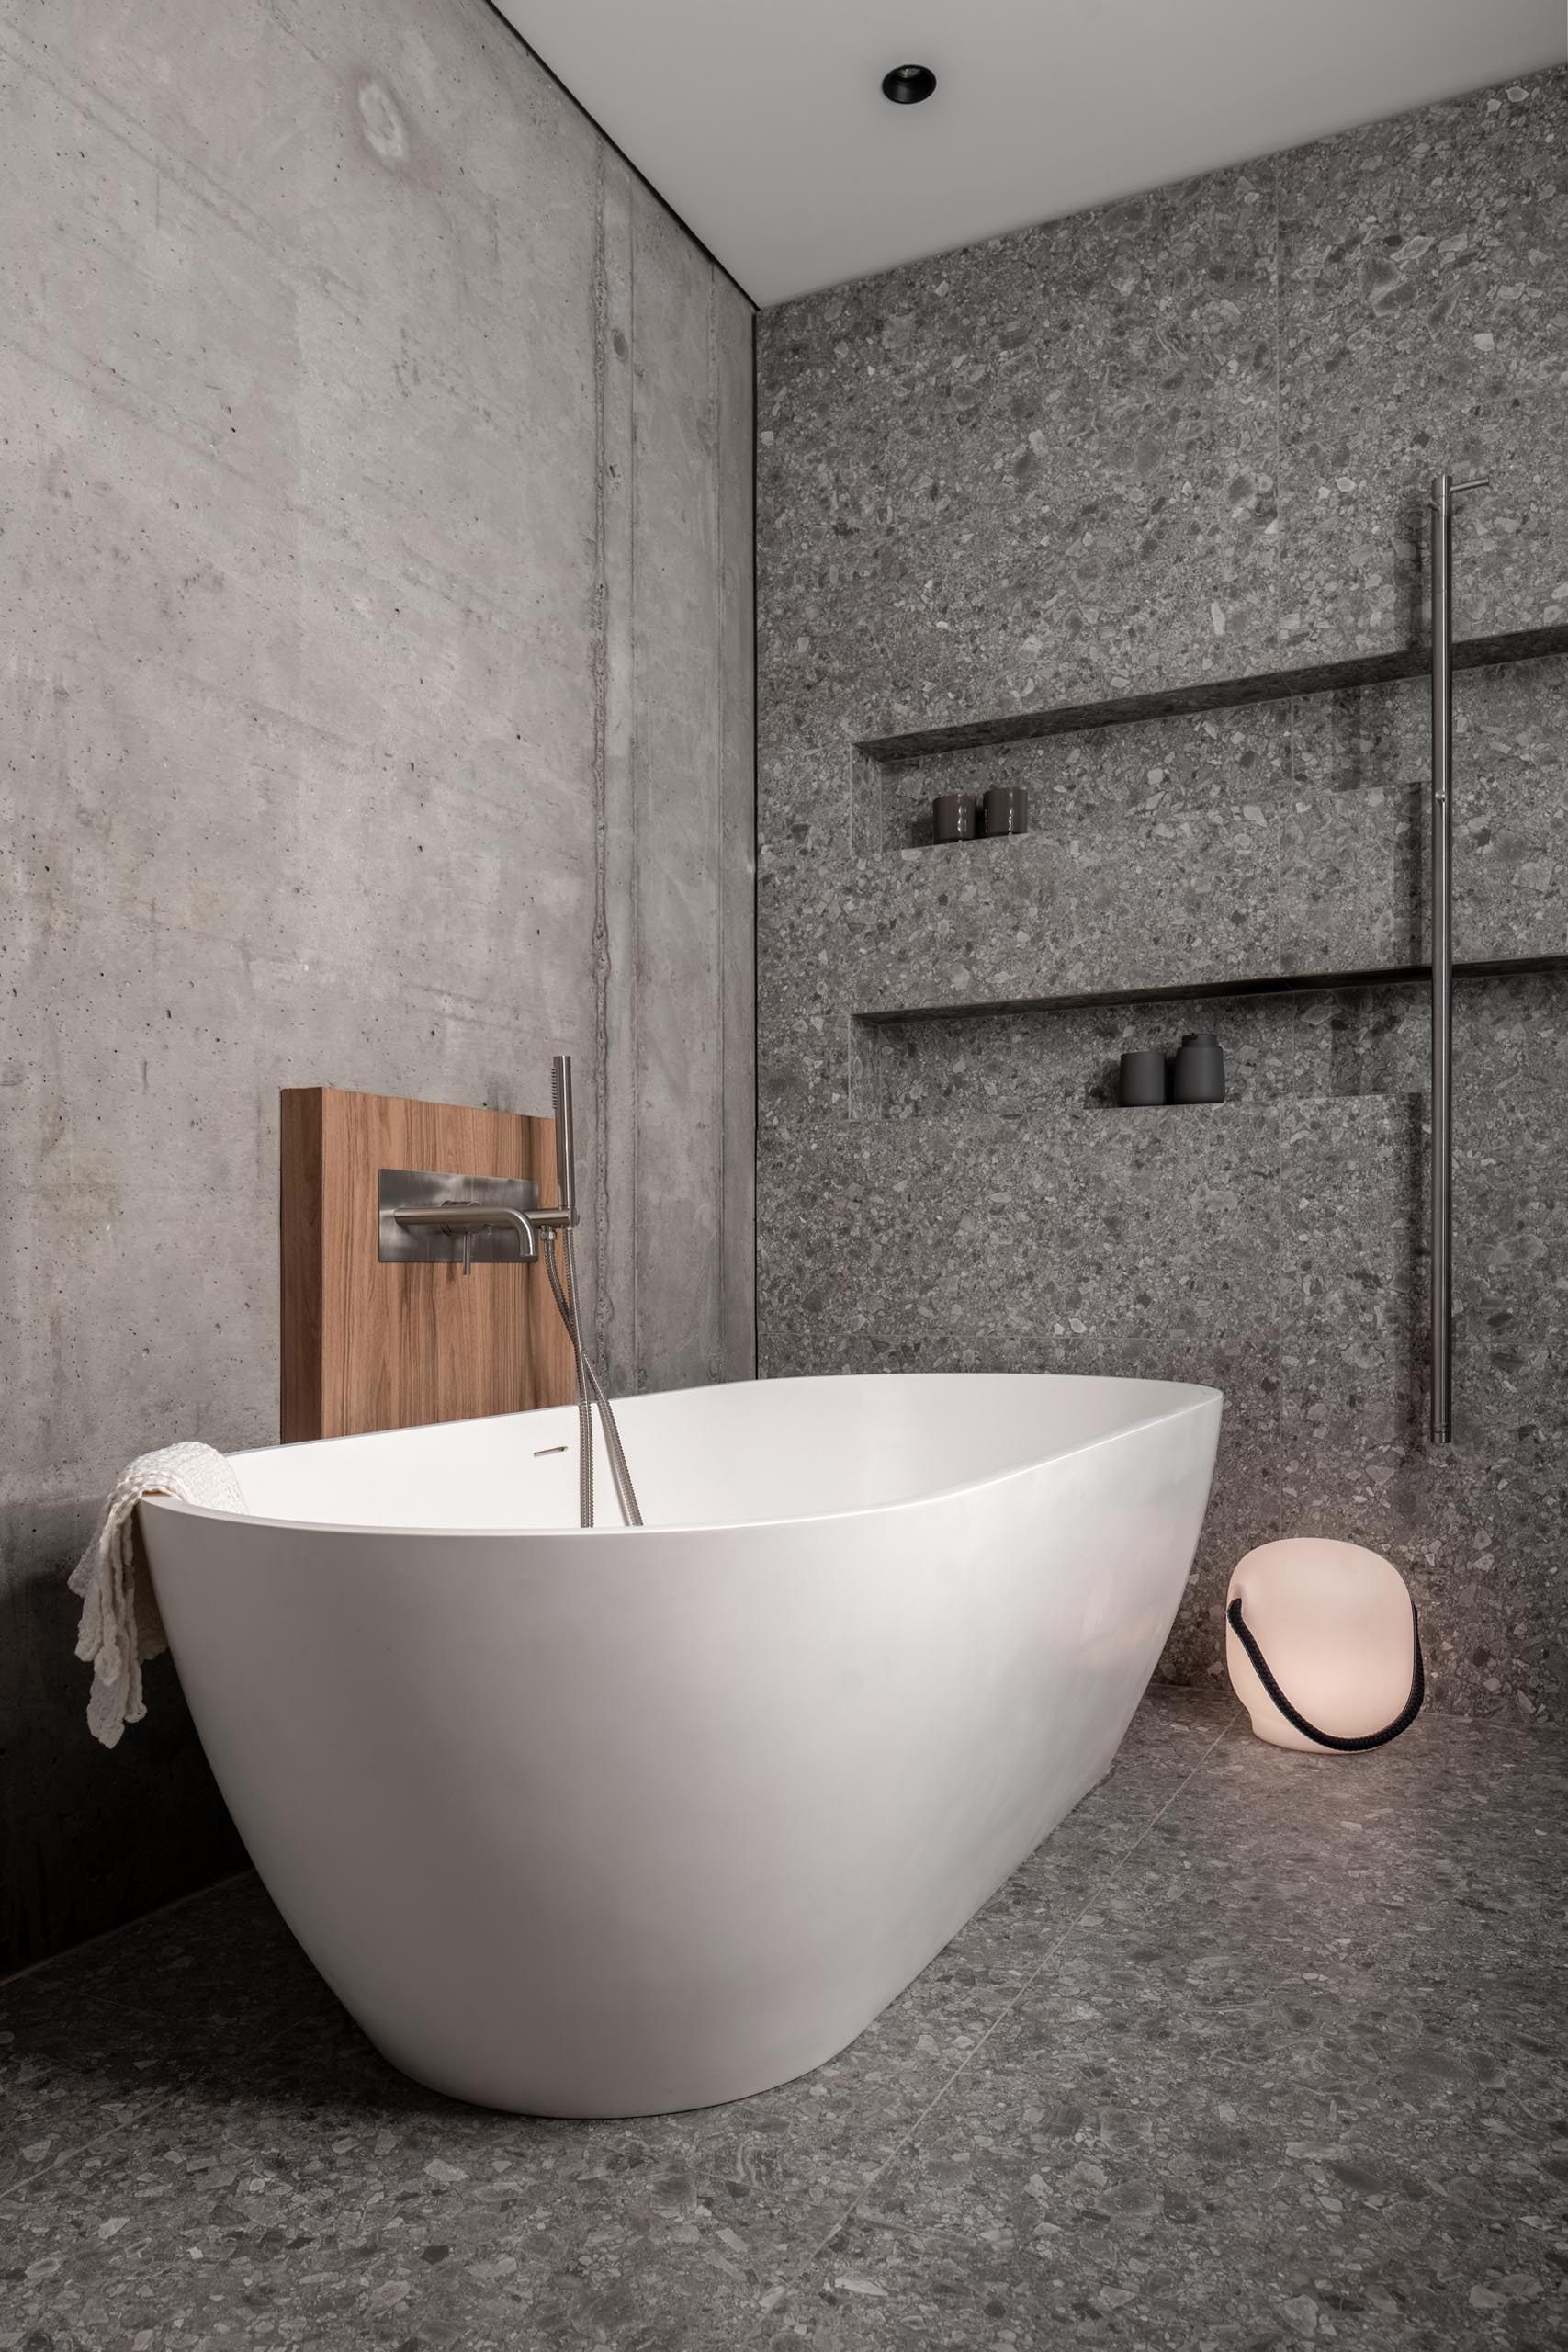 Современная серая ванная комната с двумя душевыми нишами и отдельно стоящей белой ванной.